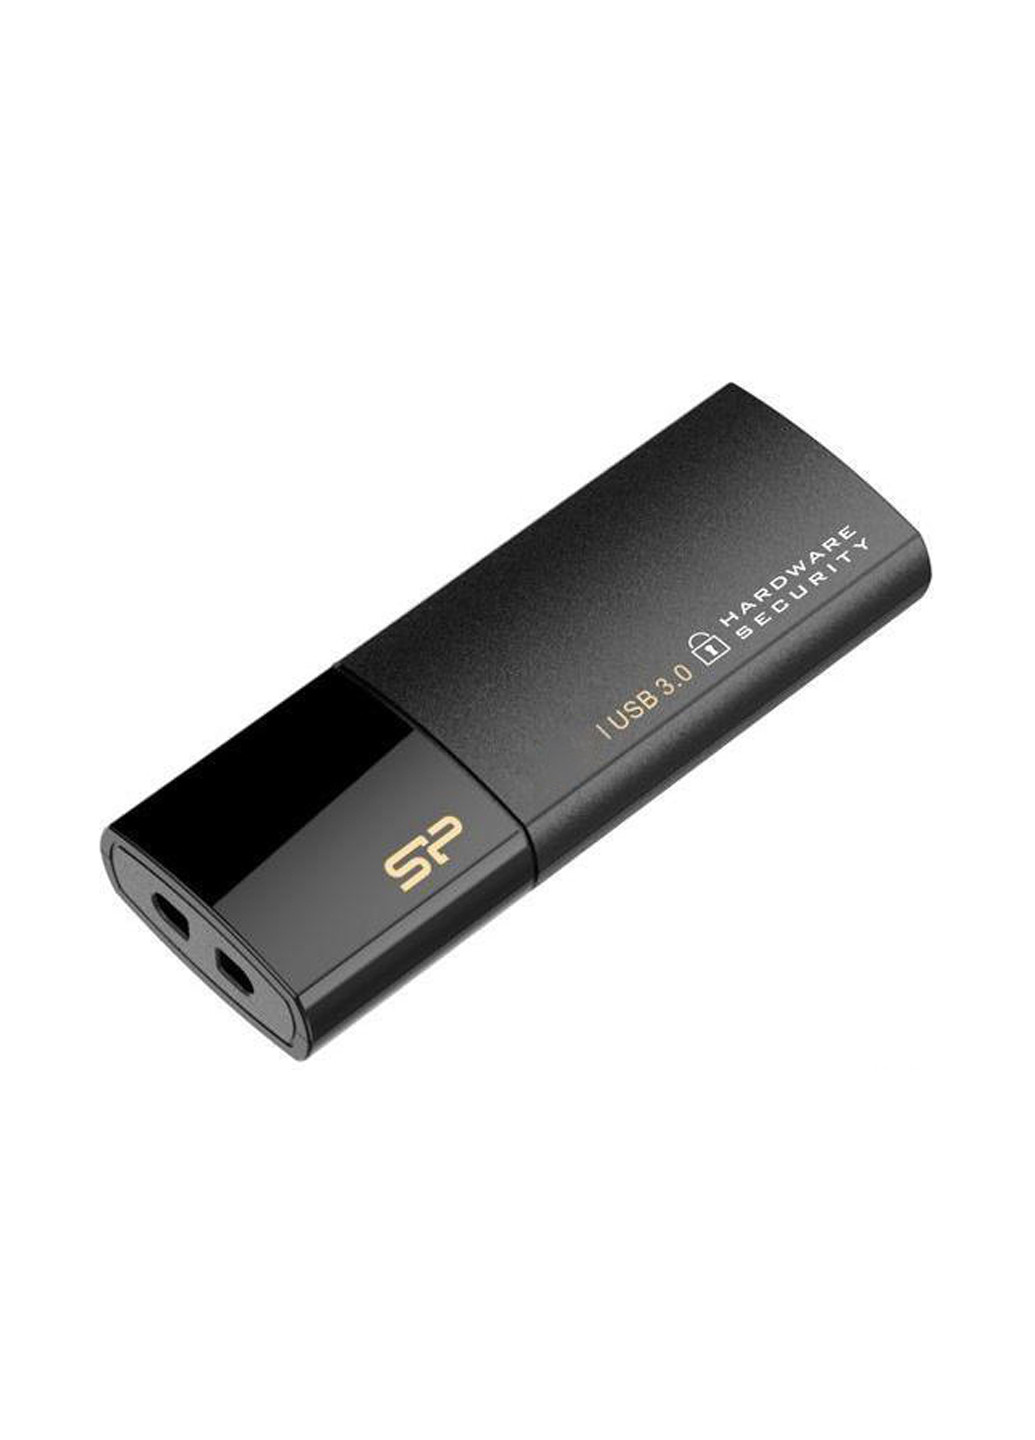 Флеш память USB 8GB Secure G50 USB 3.0 (SP008GBUF3G50V1K) Silicon Power флеш память usb silicon power 8gb secure g50 usb 3.0 (sp008gbuf3g50v1k) (136742720)